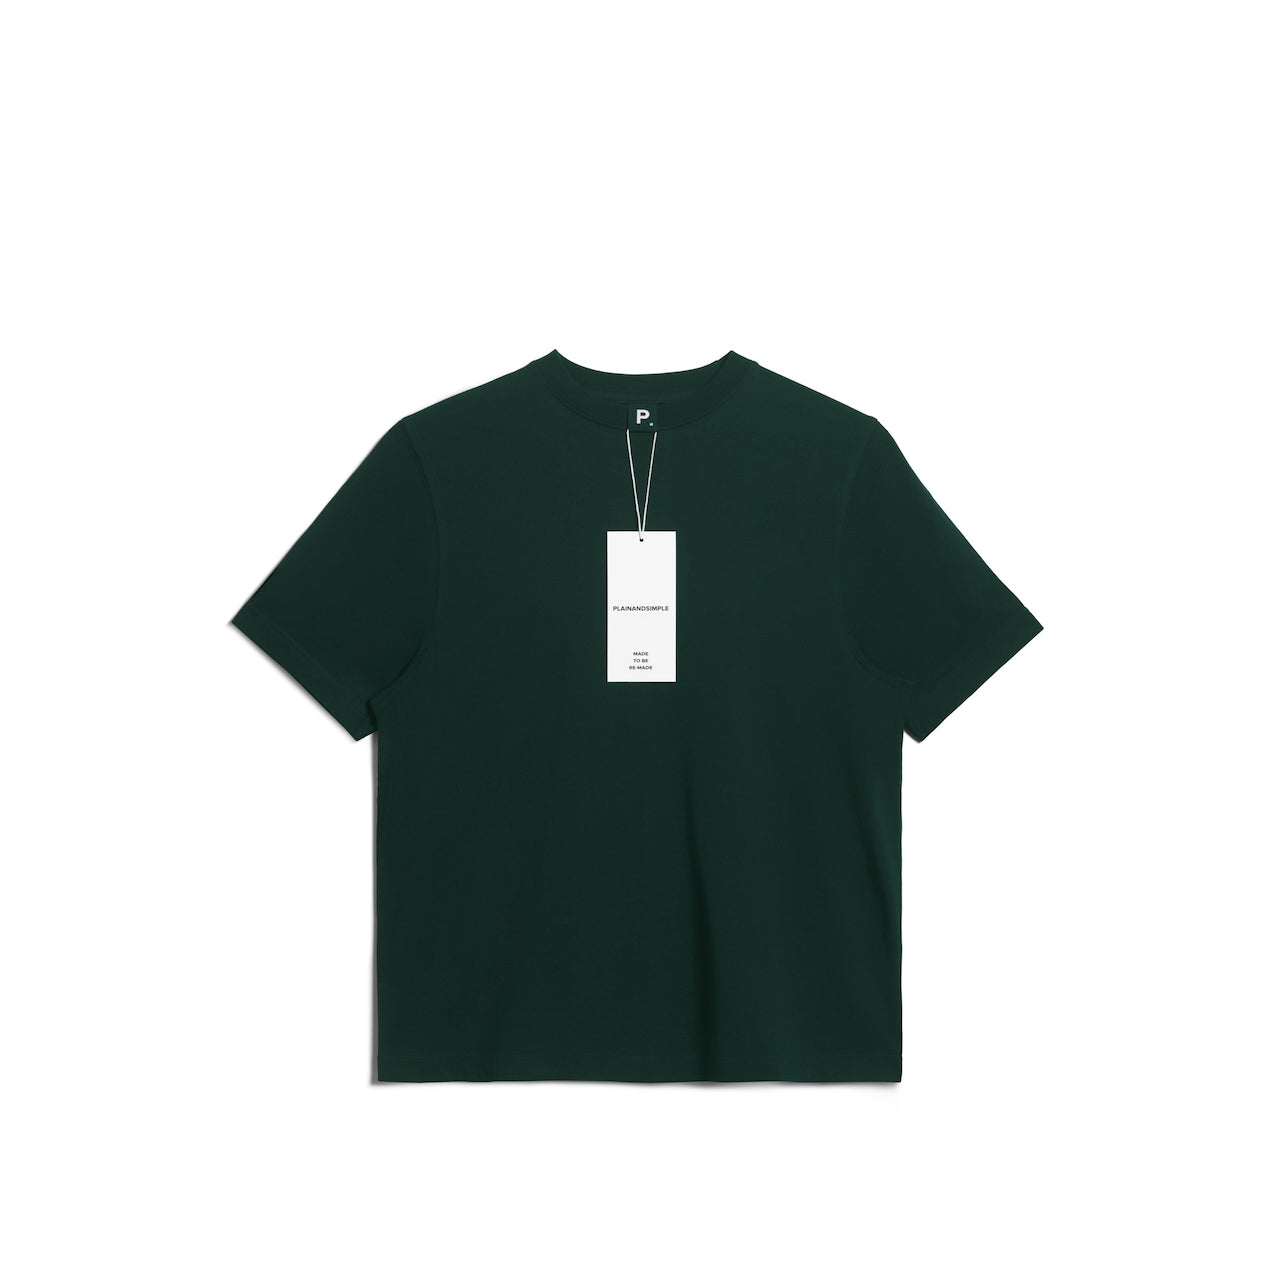 PLAINANDSIMPLE - FashionBeans - Alternative T-Shirt Options That Would Suit You Better